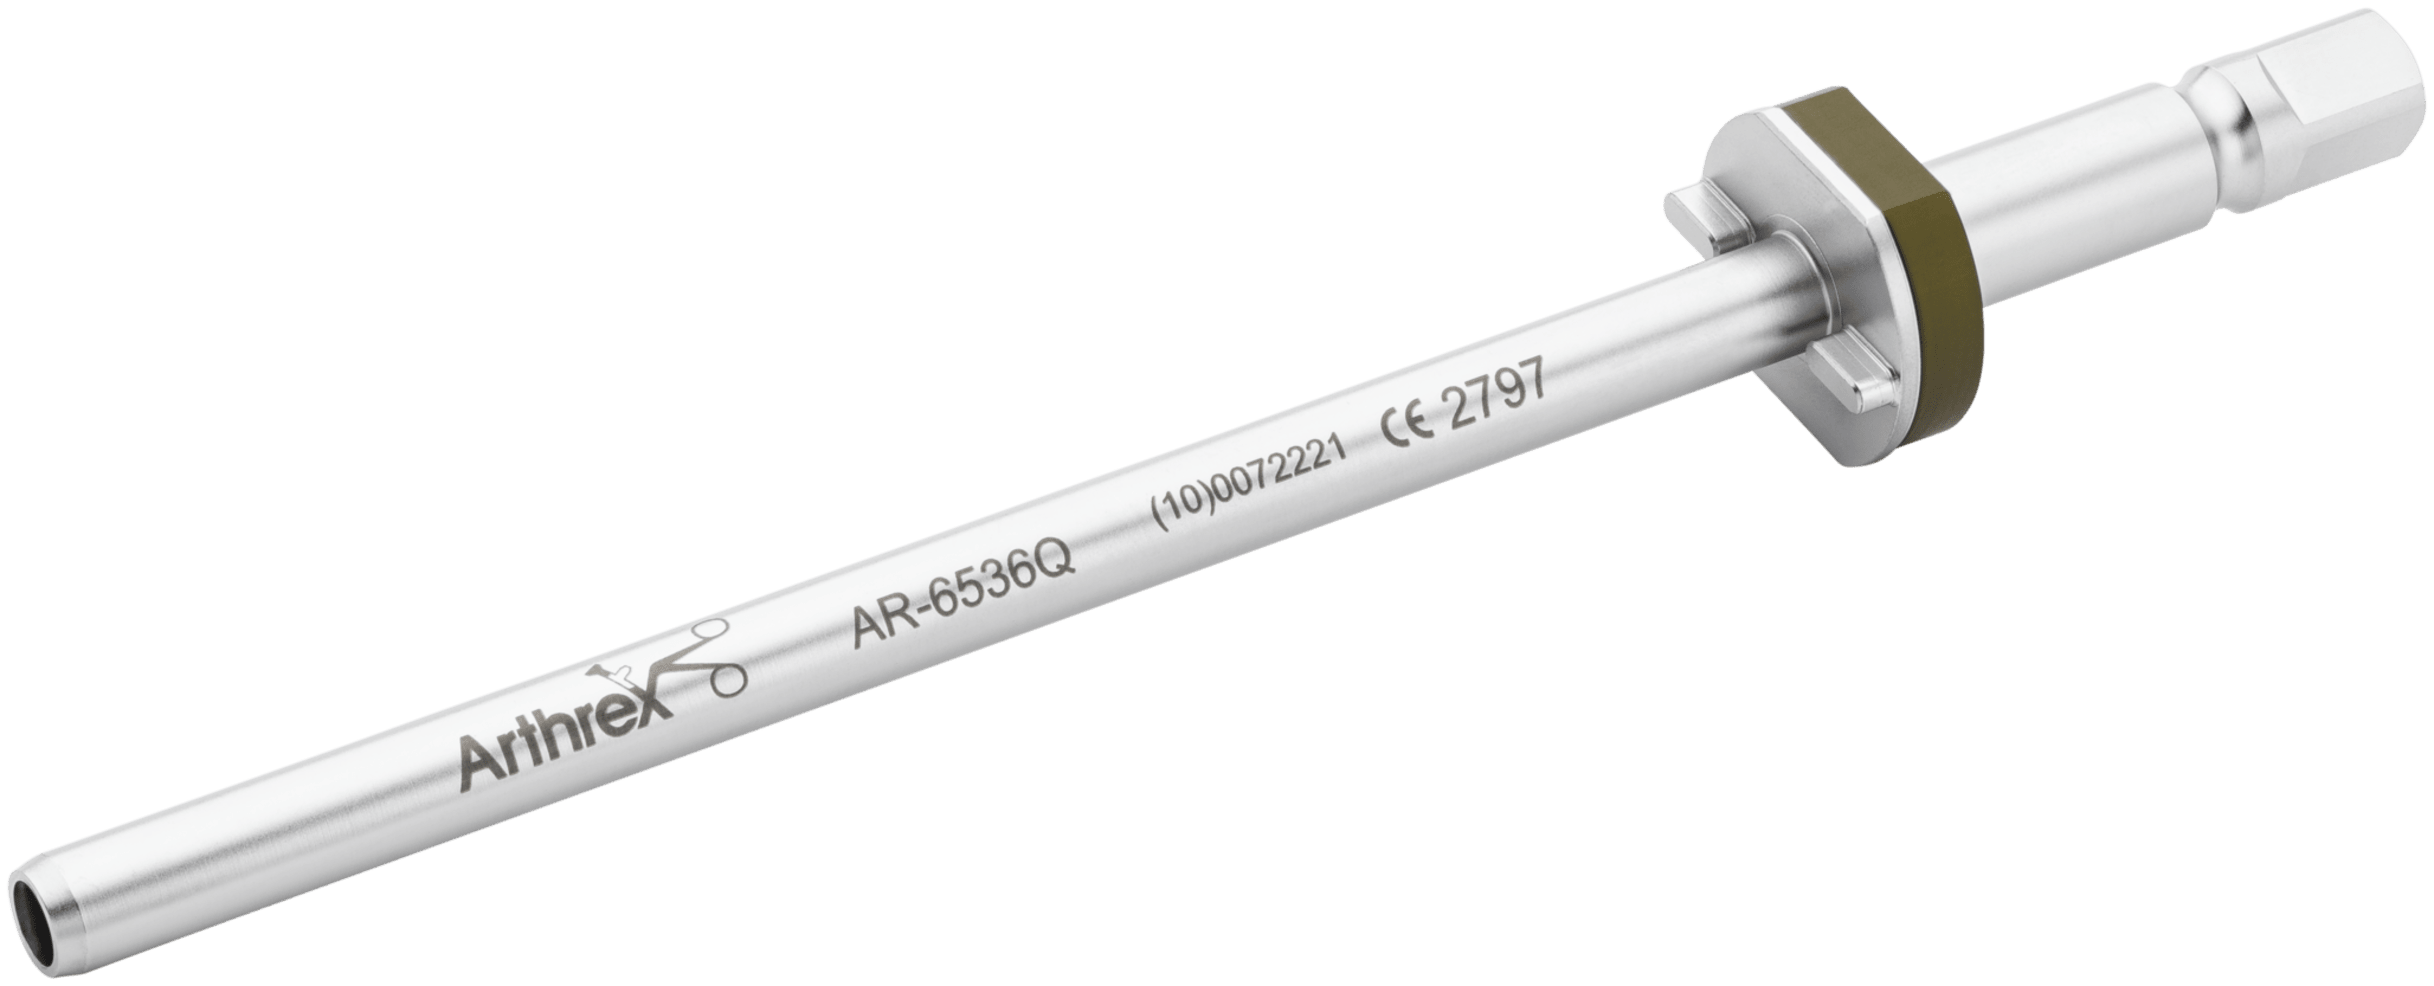 Wiederverwendbarer Obturator, für AR-6535